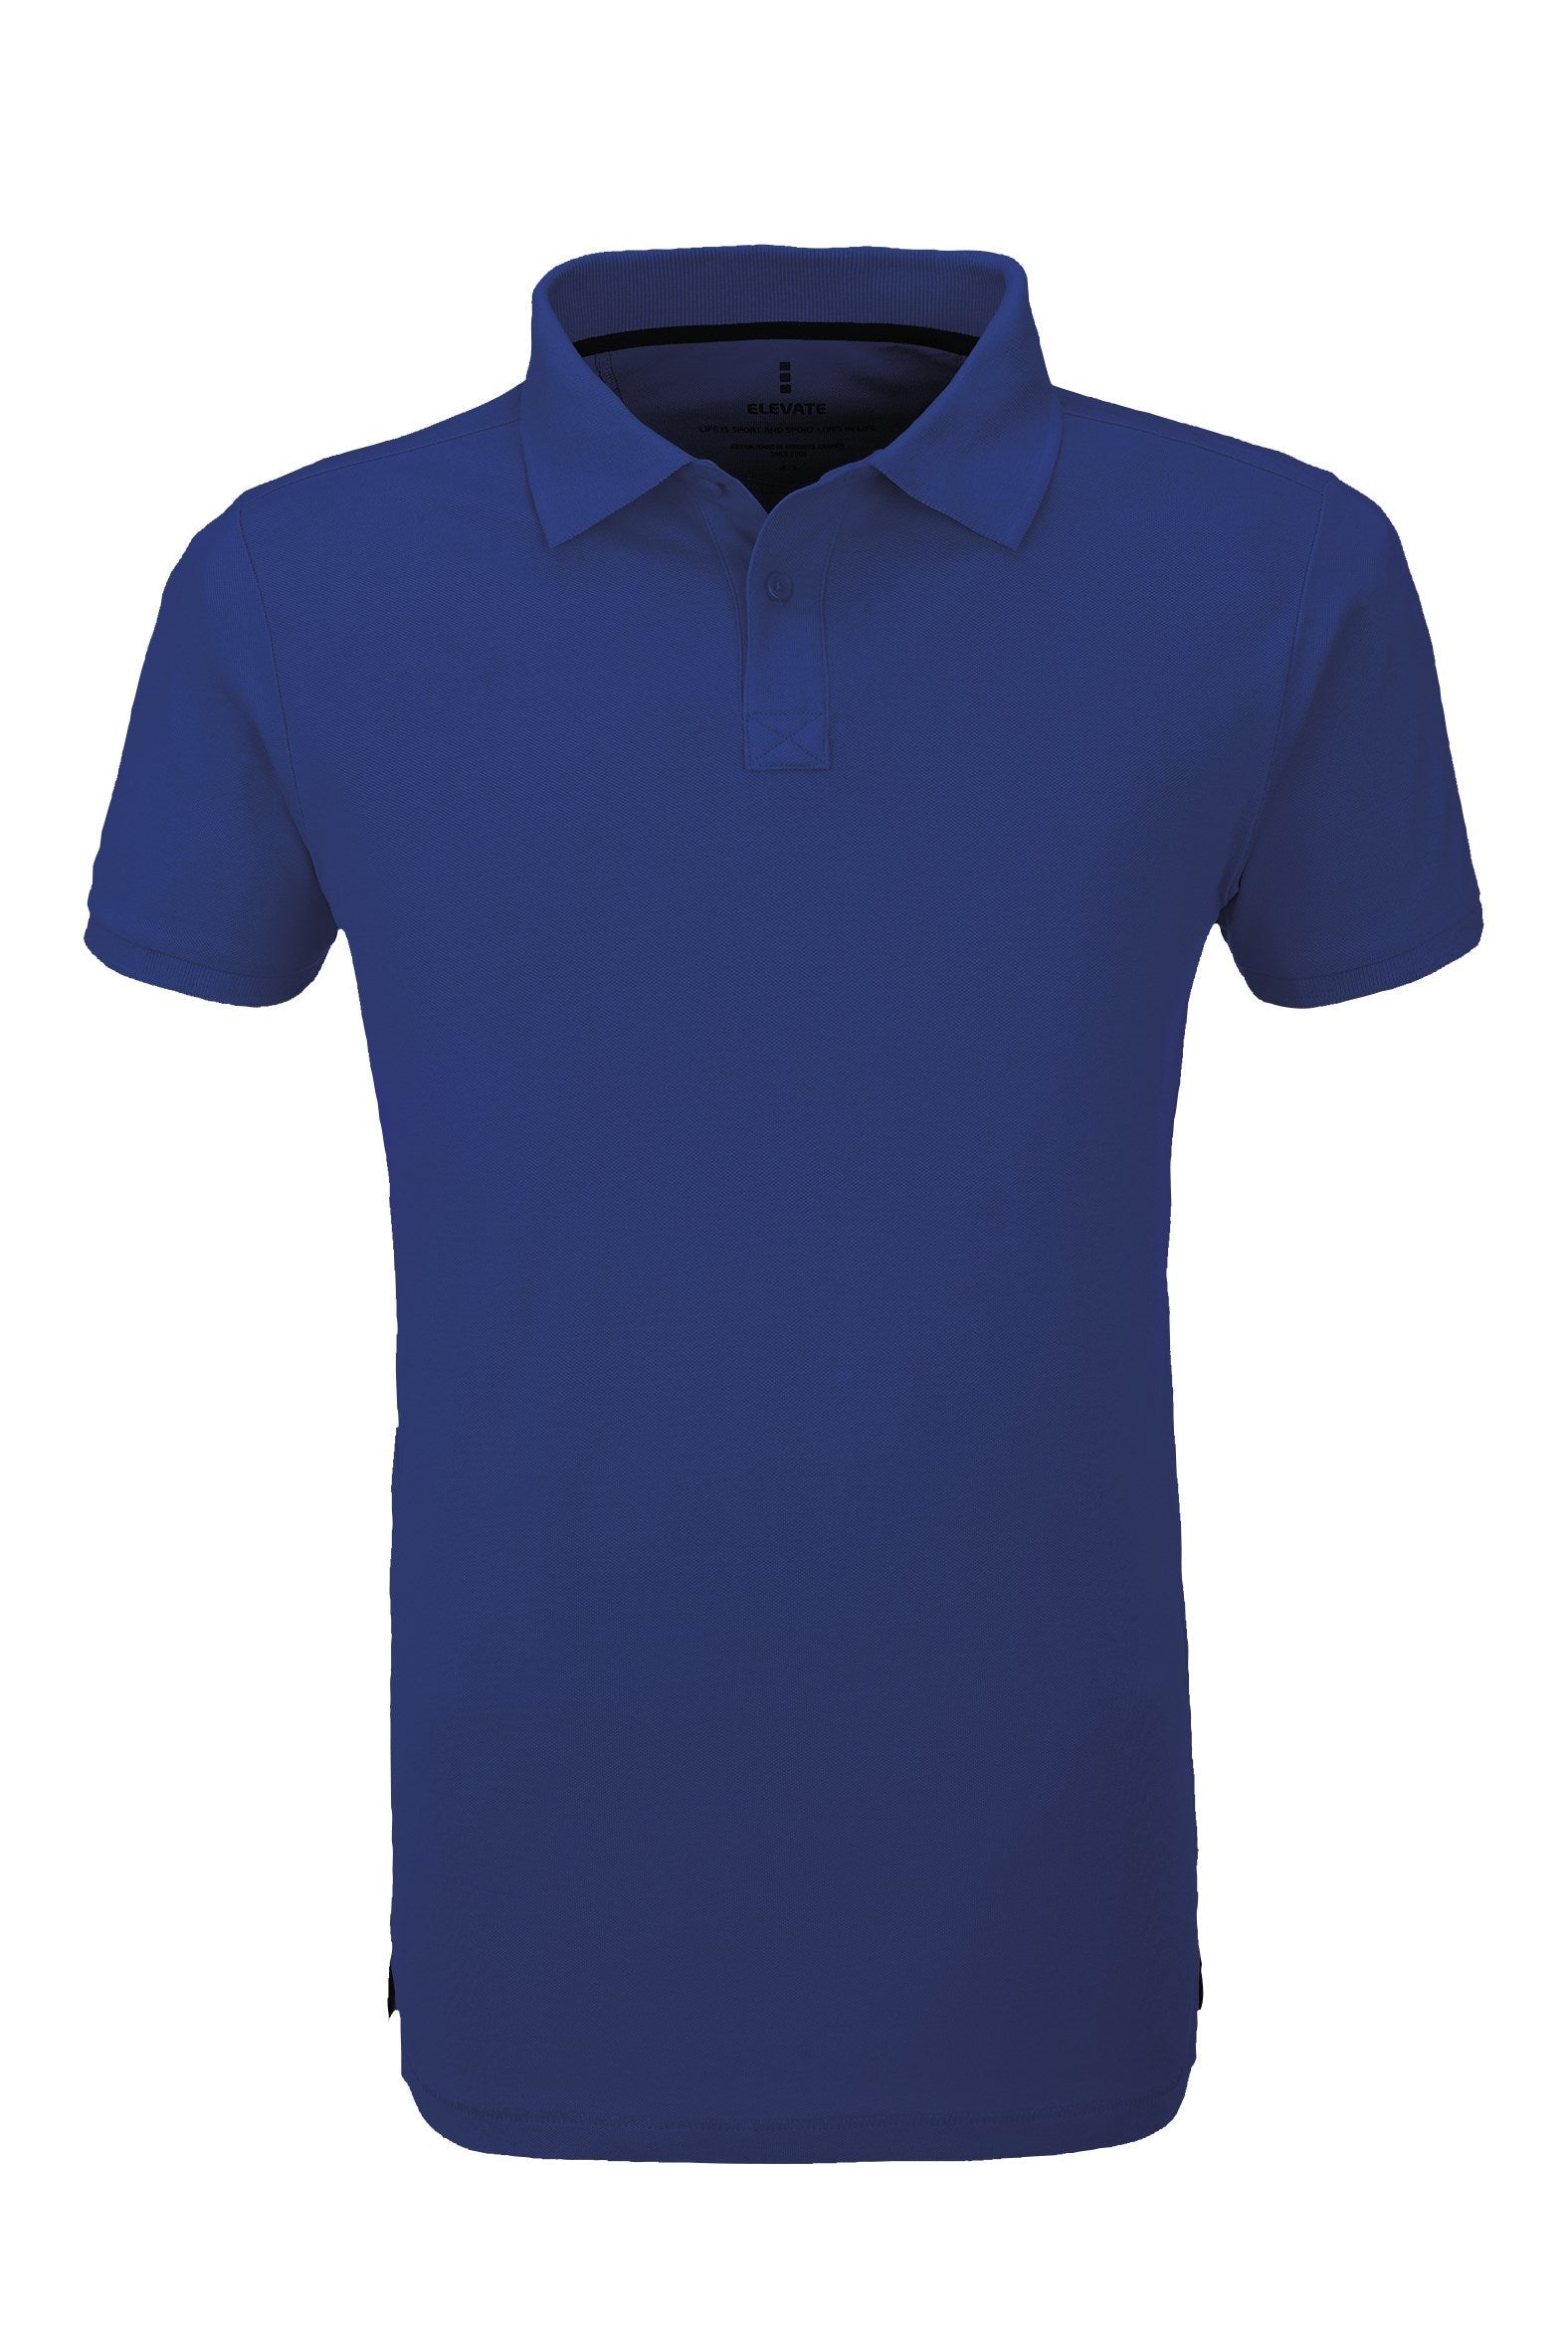 Mens Calgary Golf Shirt - Black Only-2XL-Blue-BU